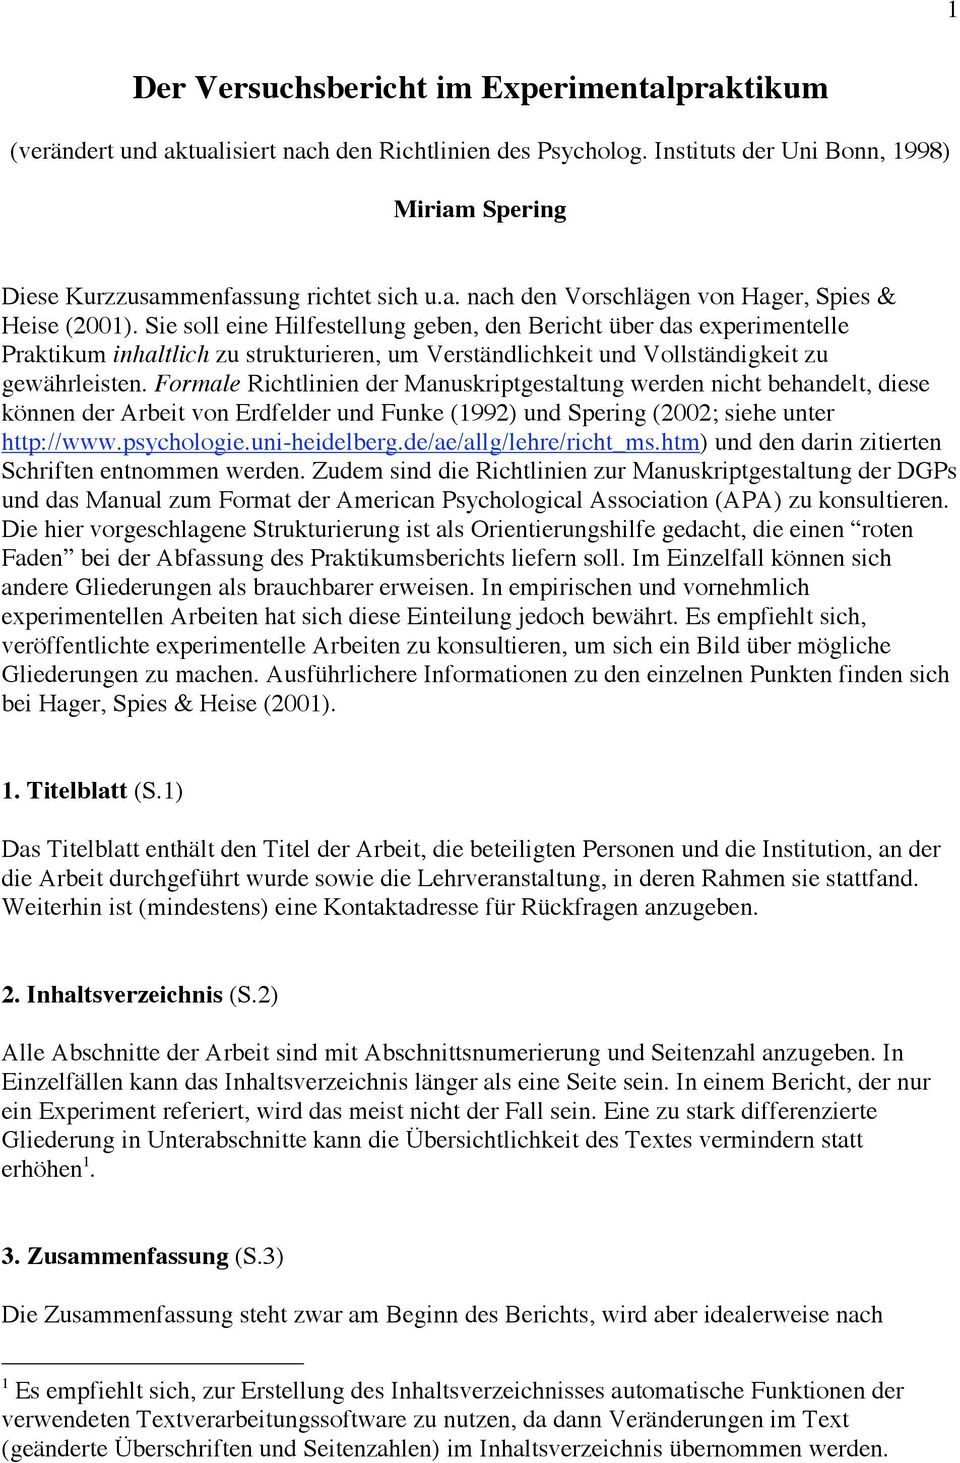 Formale Richtlinien der Manuskriptgestaltung werden nicht behandelt, diese können der Arbeit von Erdfelder und Funke (1992) und Spering (2002; siehe unter http://www.psychologie.uni-heidelberg.